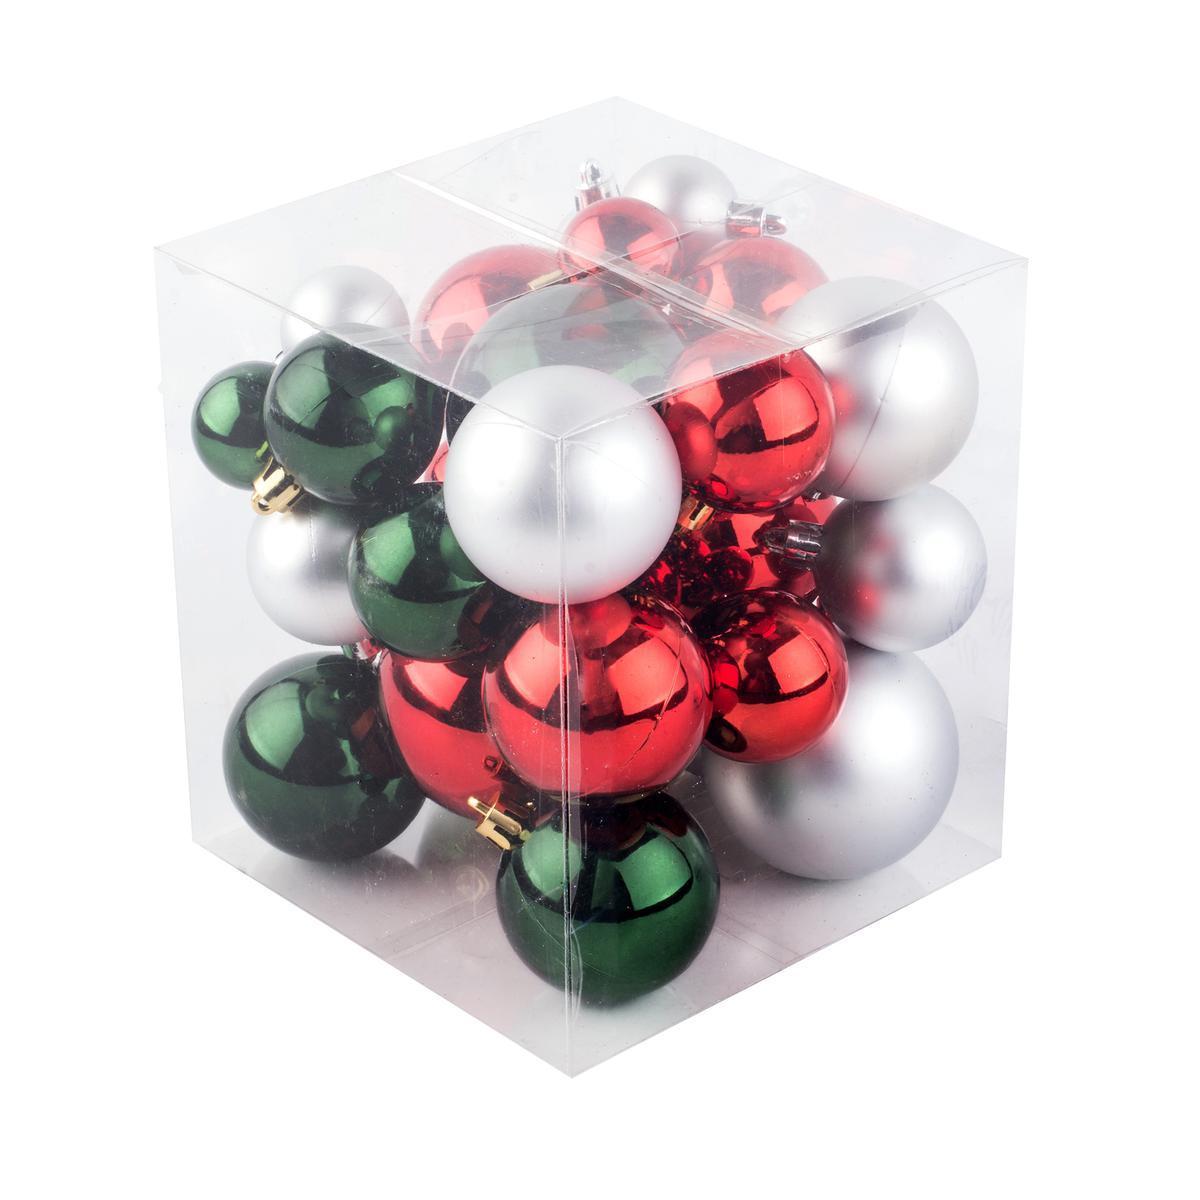 31 boules de Noël - Rouge, vert et argent